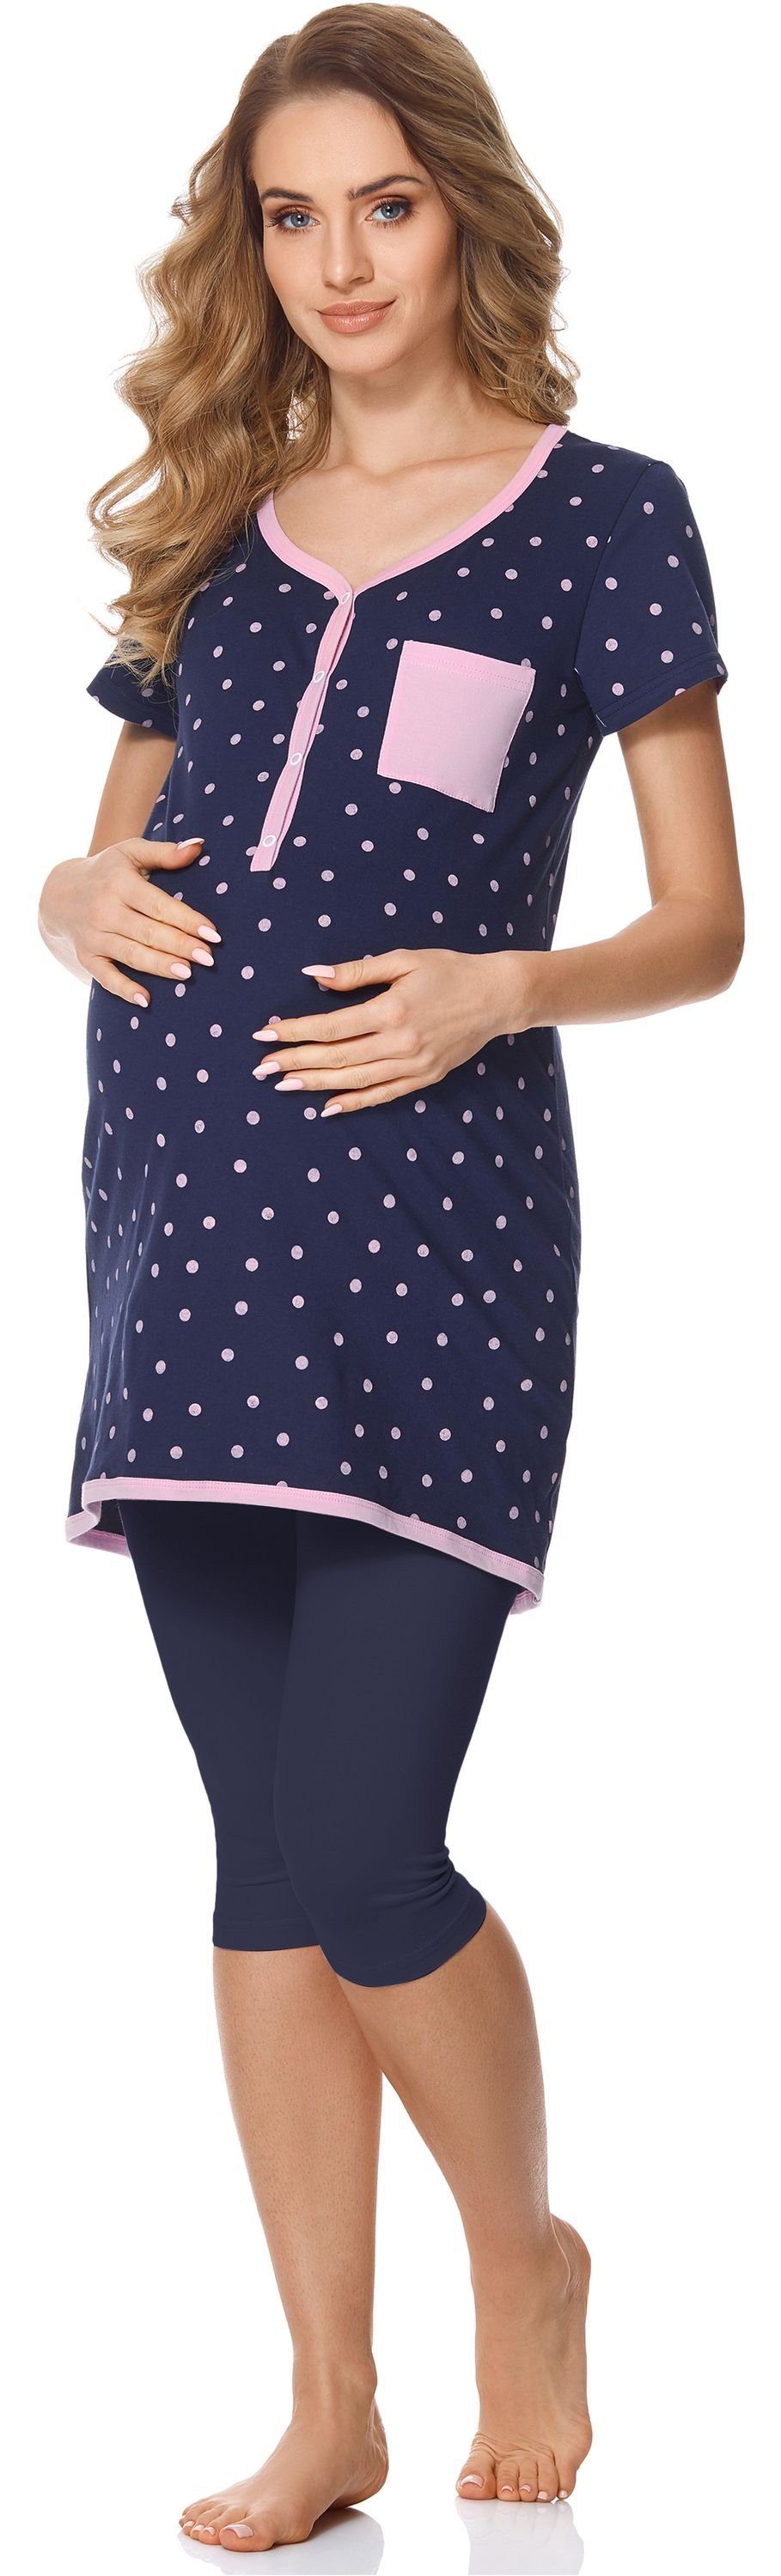 Bellivalini Umstandspyjama Damen Umstands Pyjama mit Stillfunktion BLV50-126 mit Brusttasche Marineblau Punkte/Marineblau